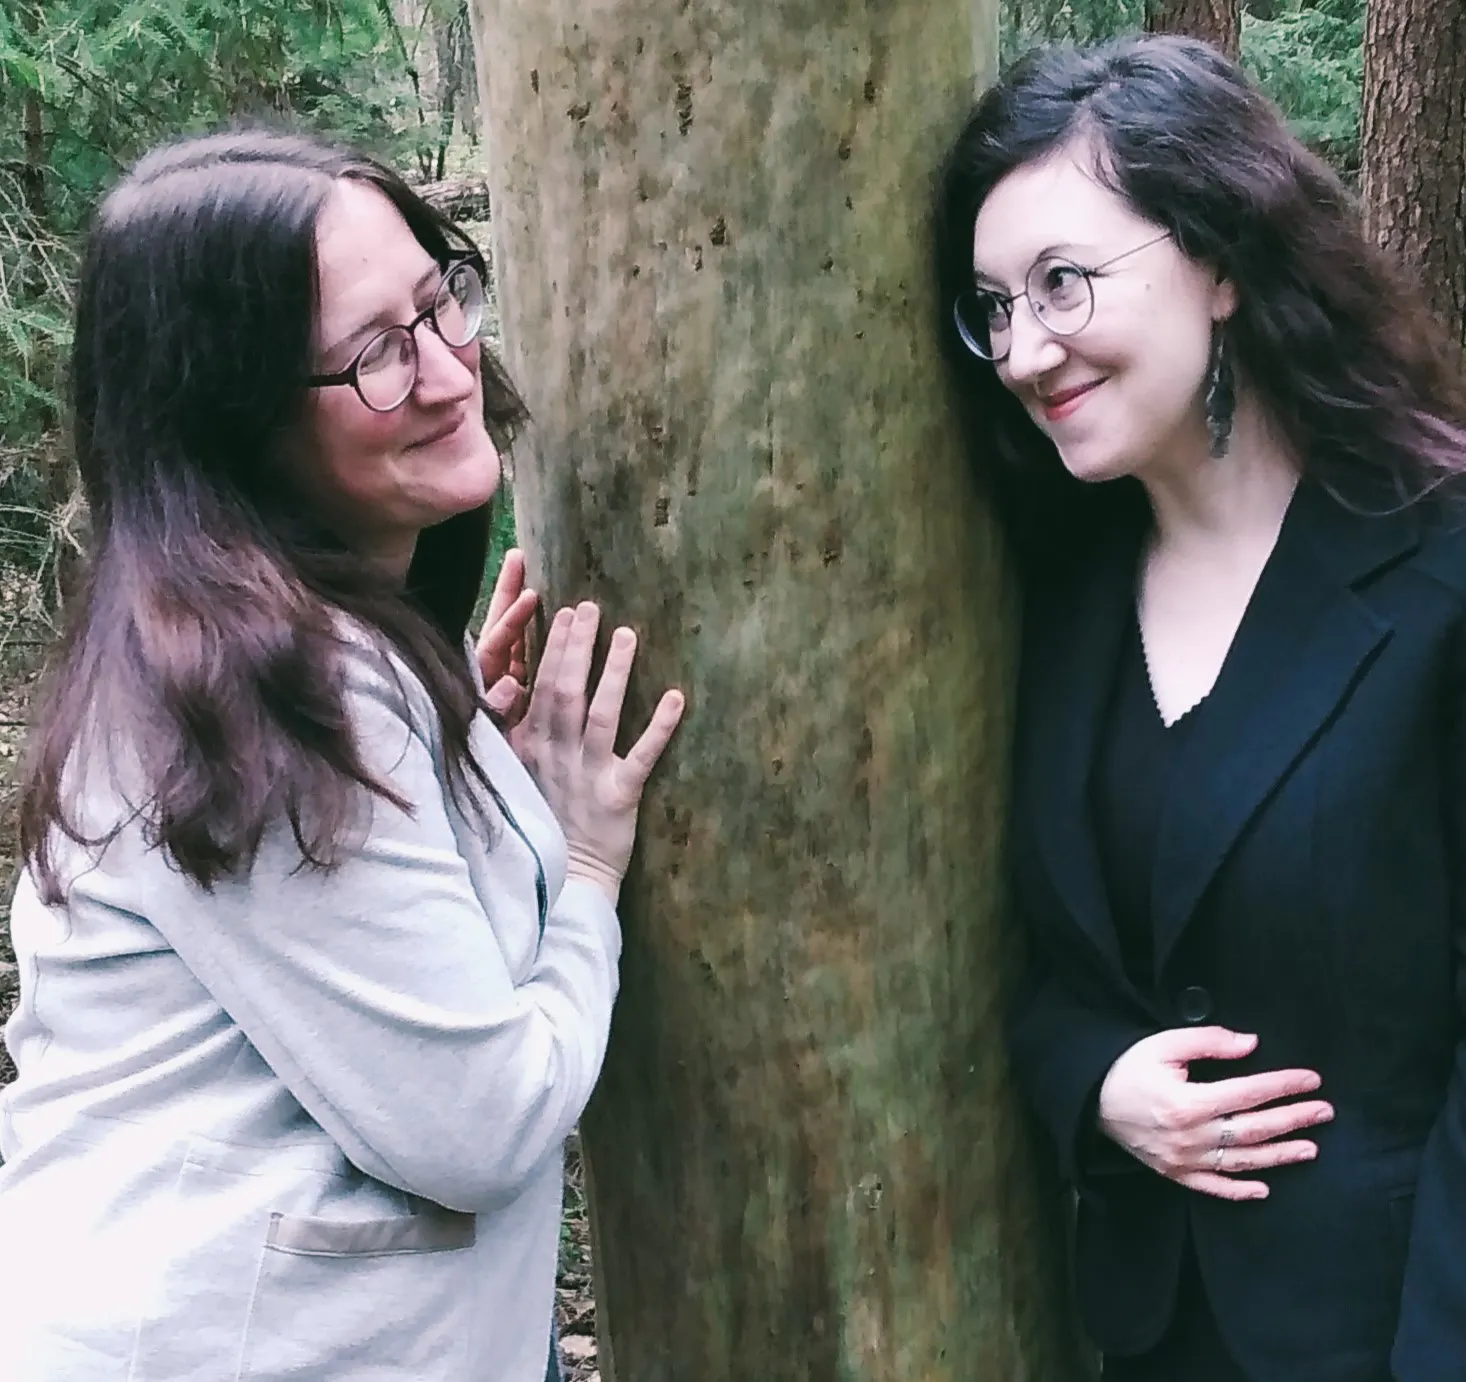 Zwei Frauen stehen an einen Baum gelehnt im Wald. Eine trägt helle, die andere dunkle Kleidung. Sie blicken einander freundlich an und lächeln.